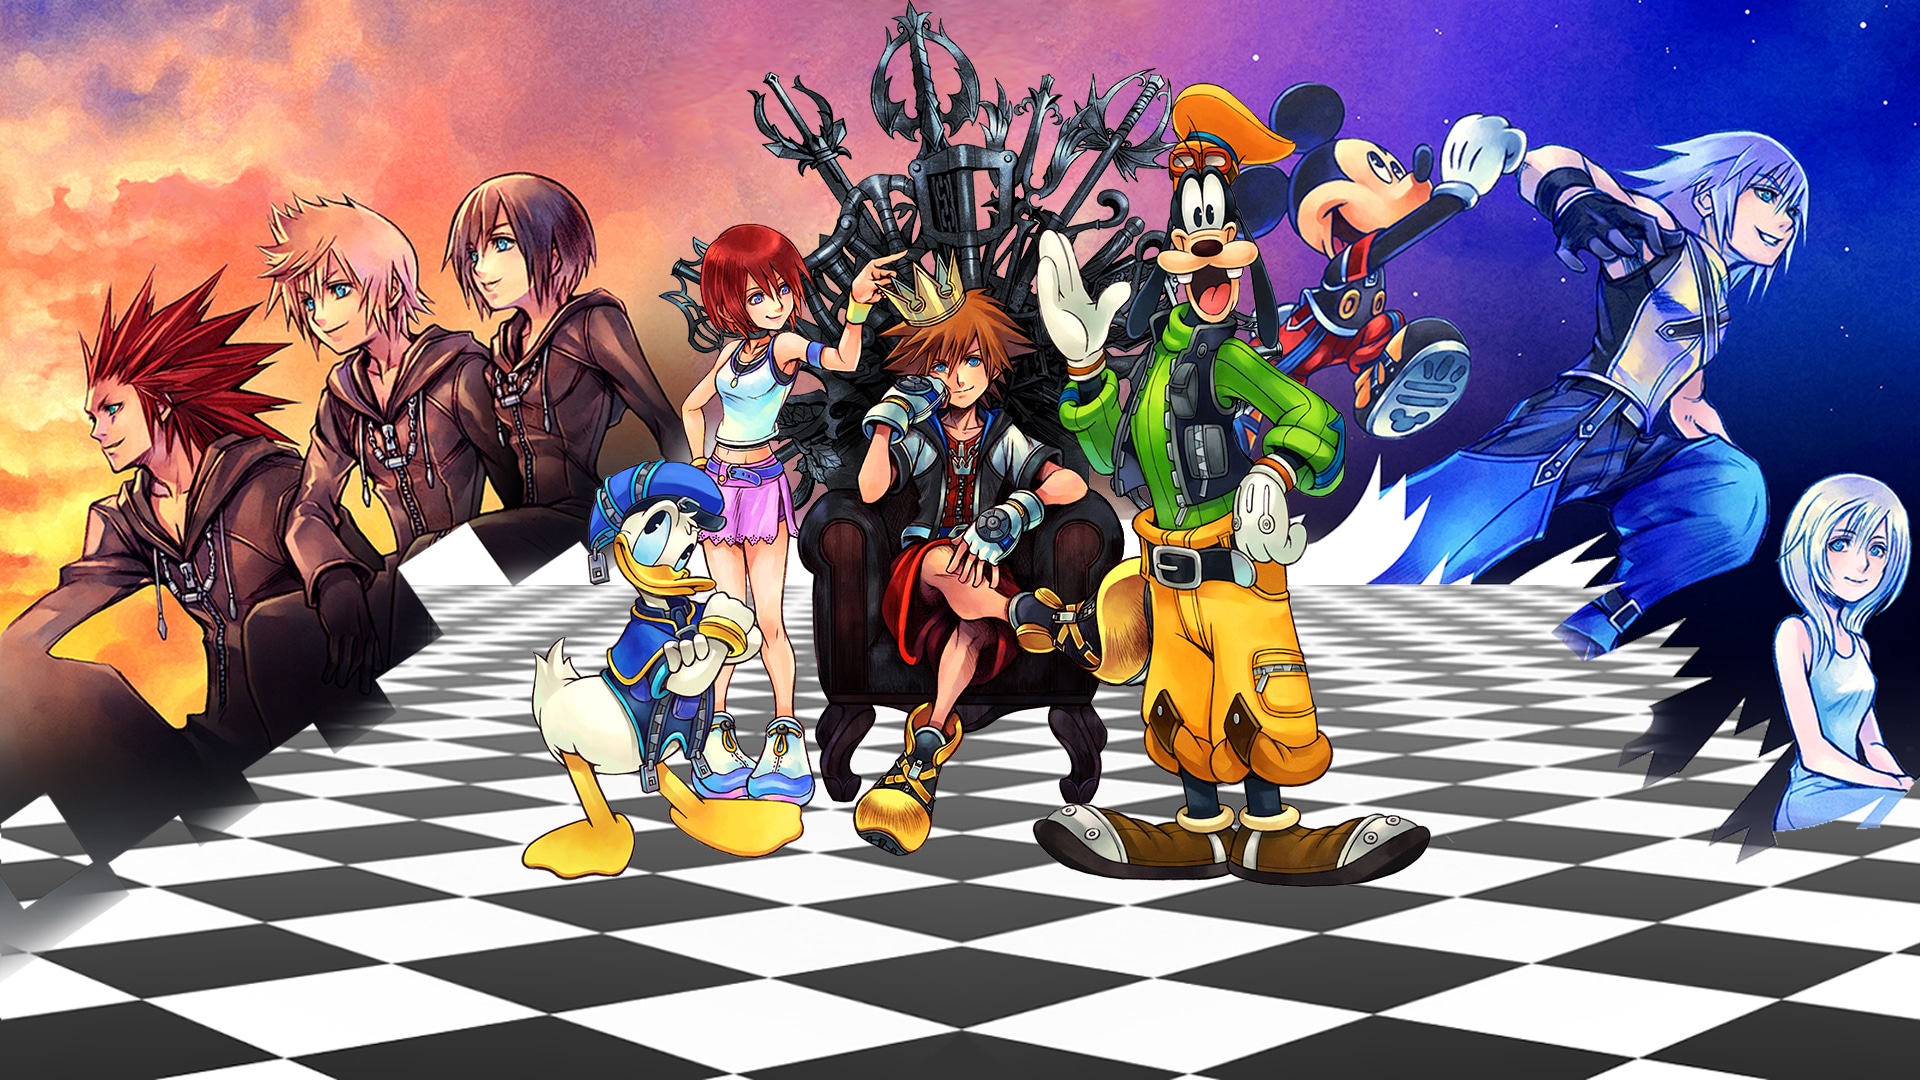 Kingdom Hearts: do pior ao melhor segundo a crítica